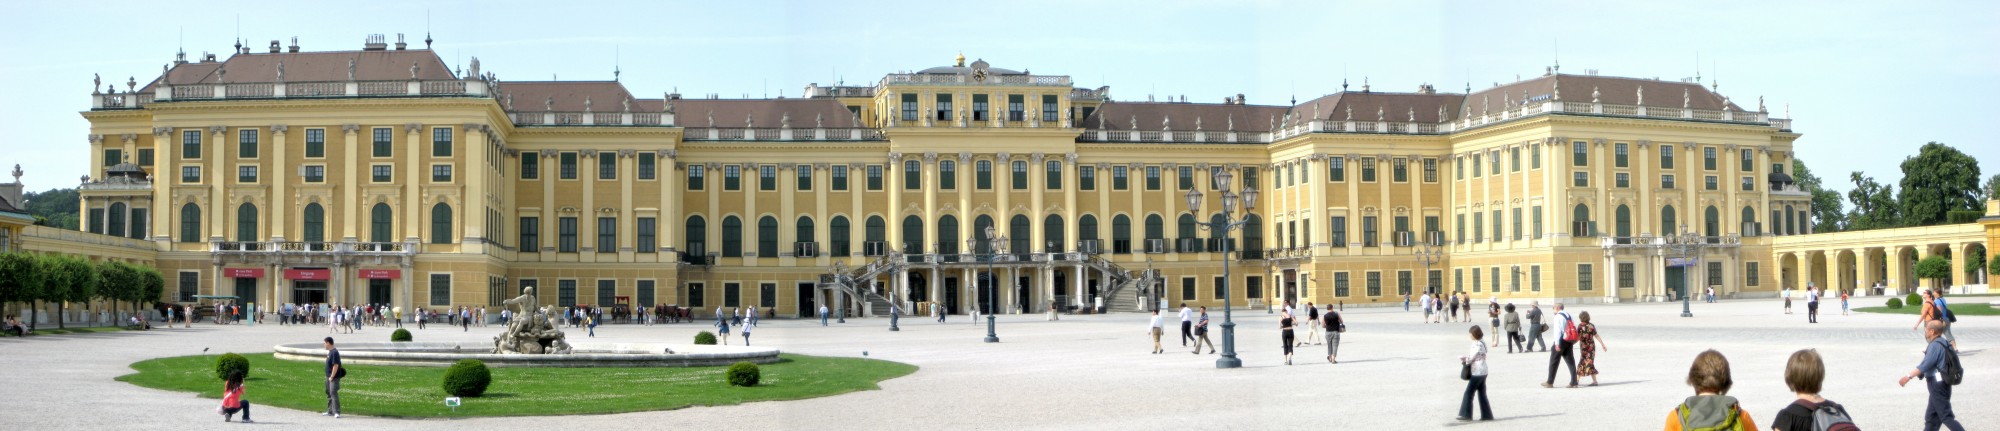 Schloss Schoenbrunn Panorama